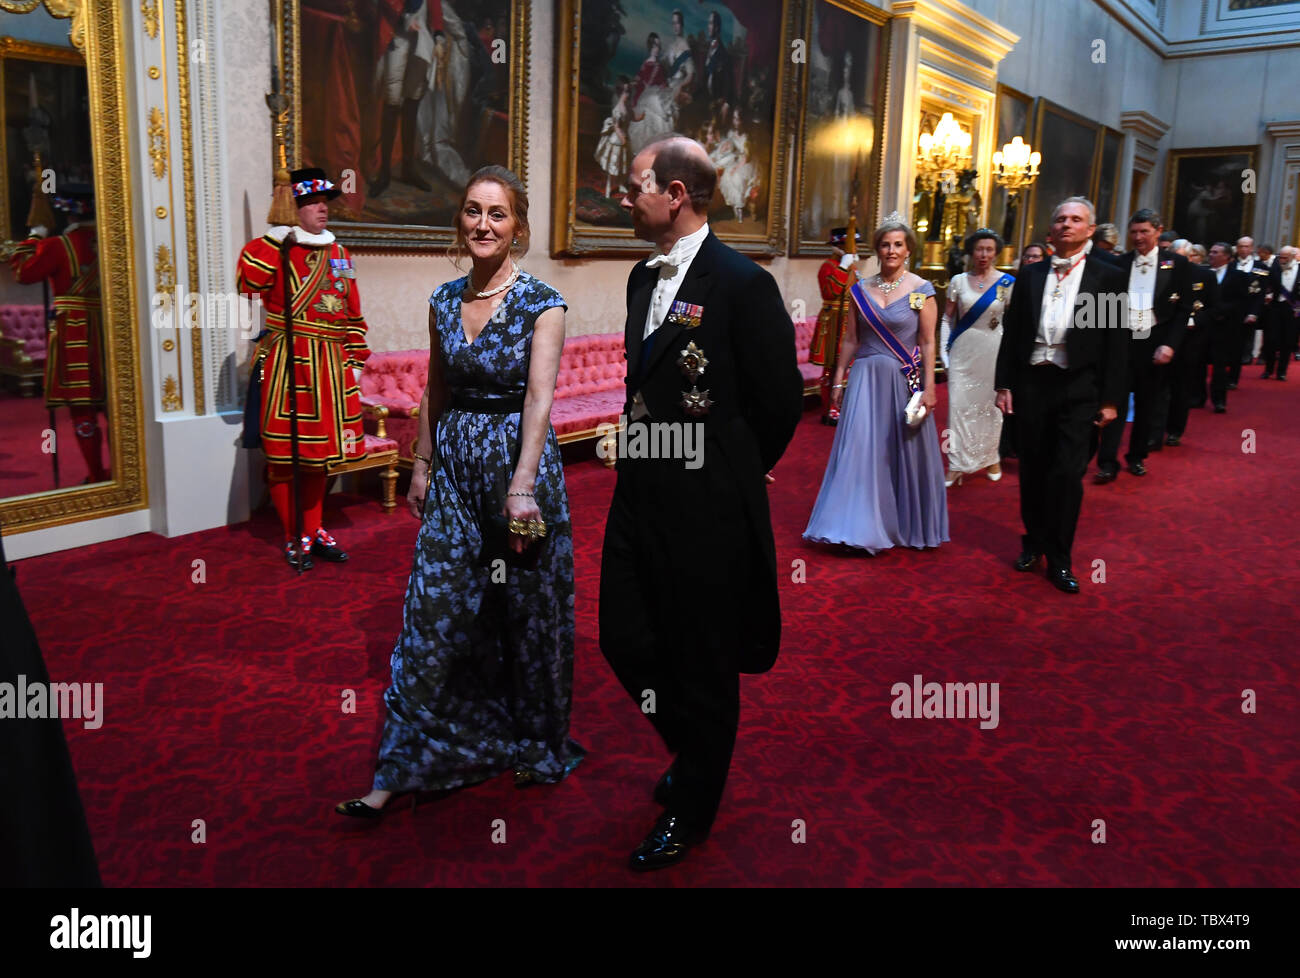 Mme Hammond et le comte de Wessex arrivent par la galerie est au cours de la banquet d'État au palais de Buckingham, à Londres, le premier jour de l'US President's trois jour visite d'état du Royaume-Uni. Banque D'Images